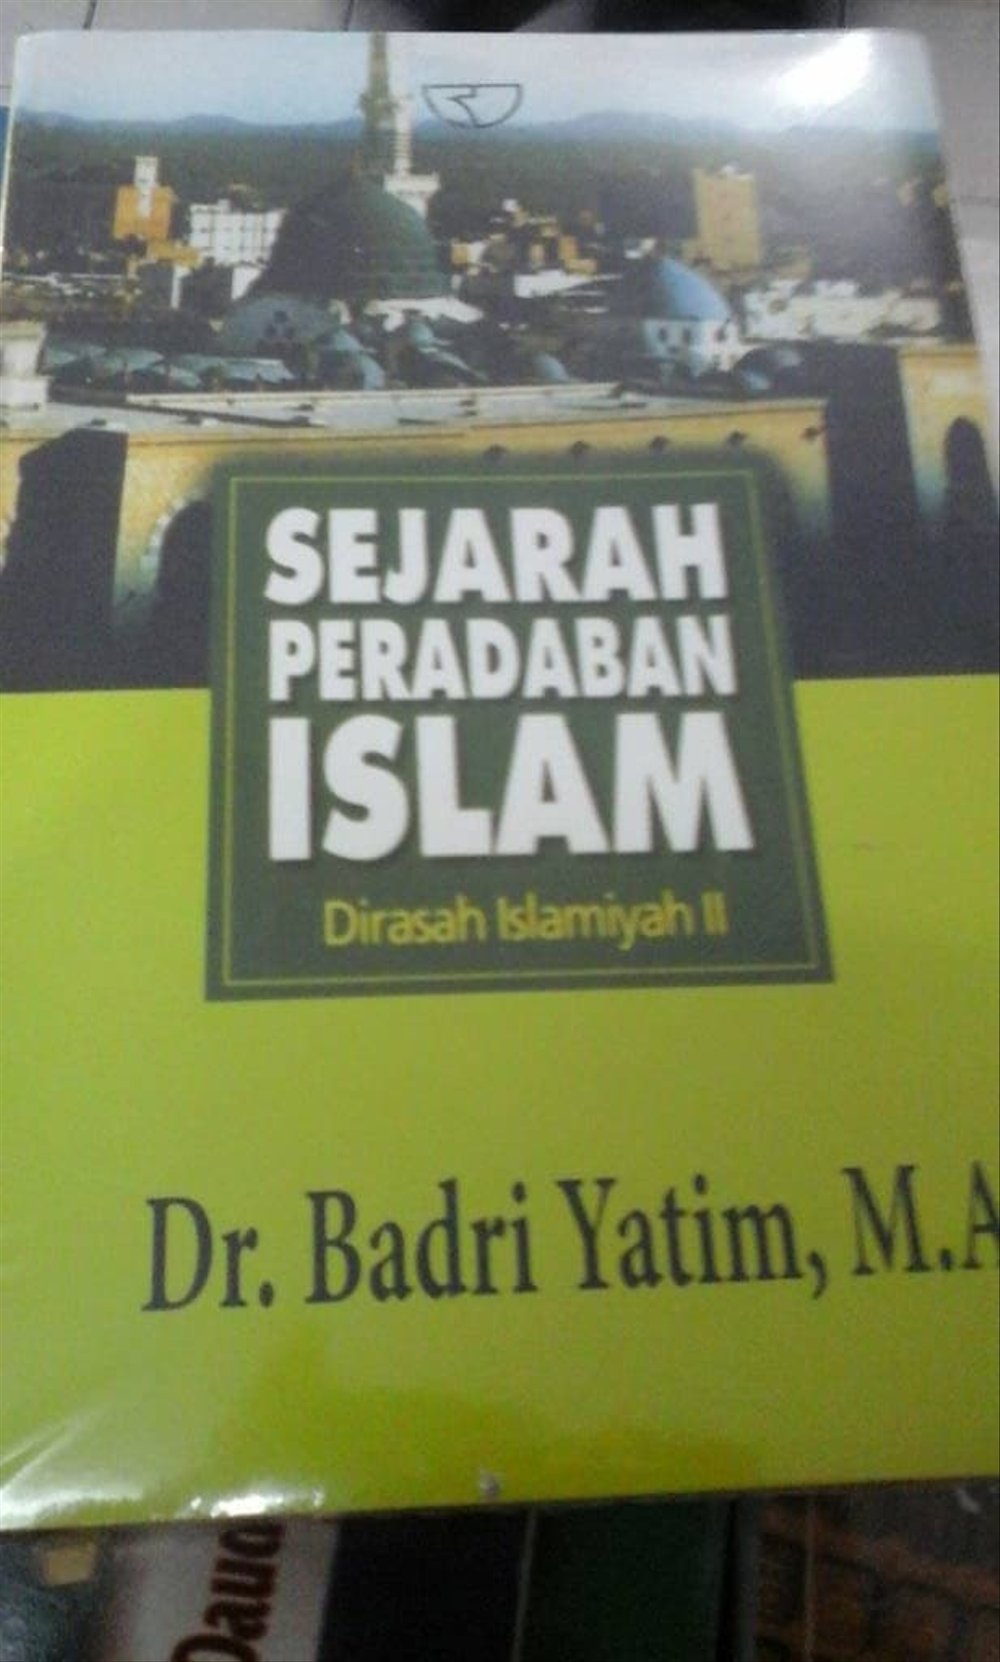 download software buku sejarah peradaban islam pdf files